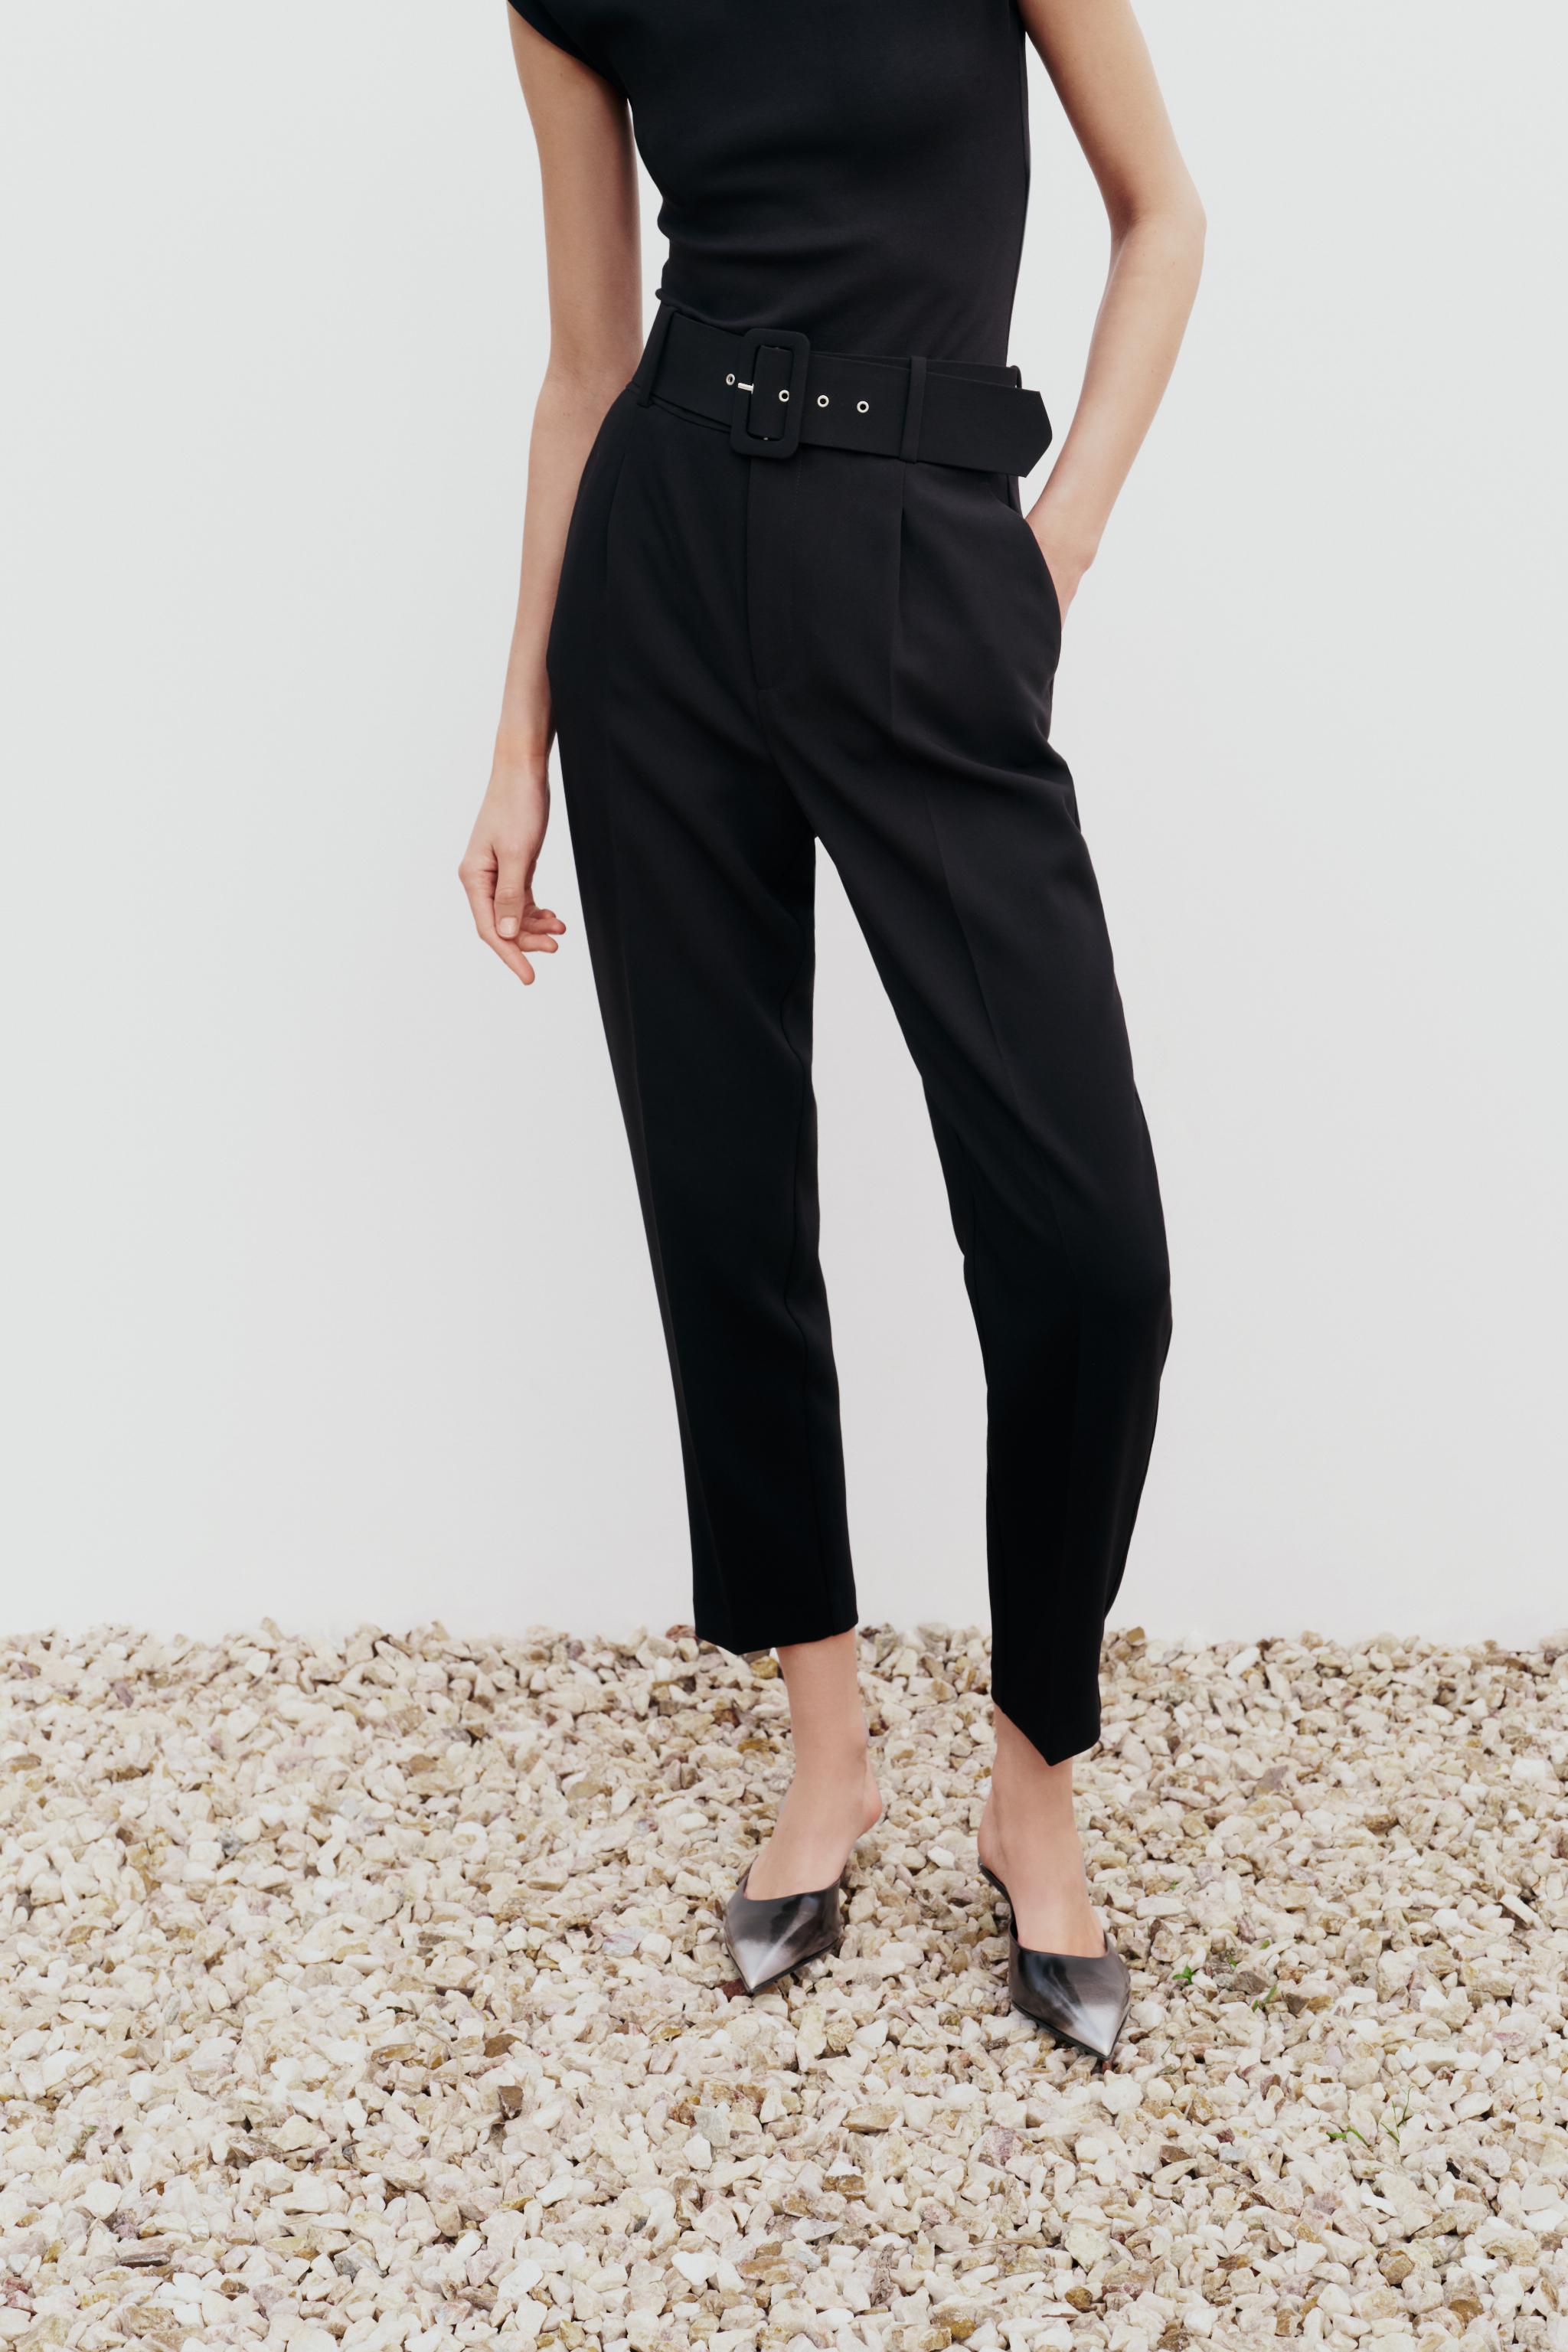 Zara Women Belted Faux Leather Pants Black 4387/063 